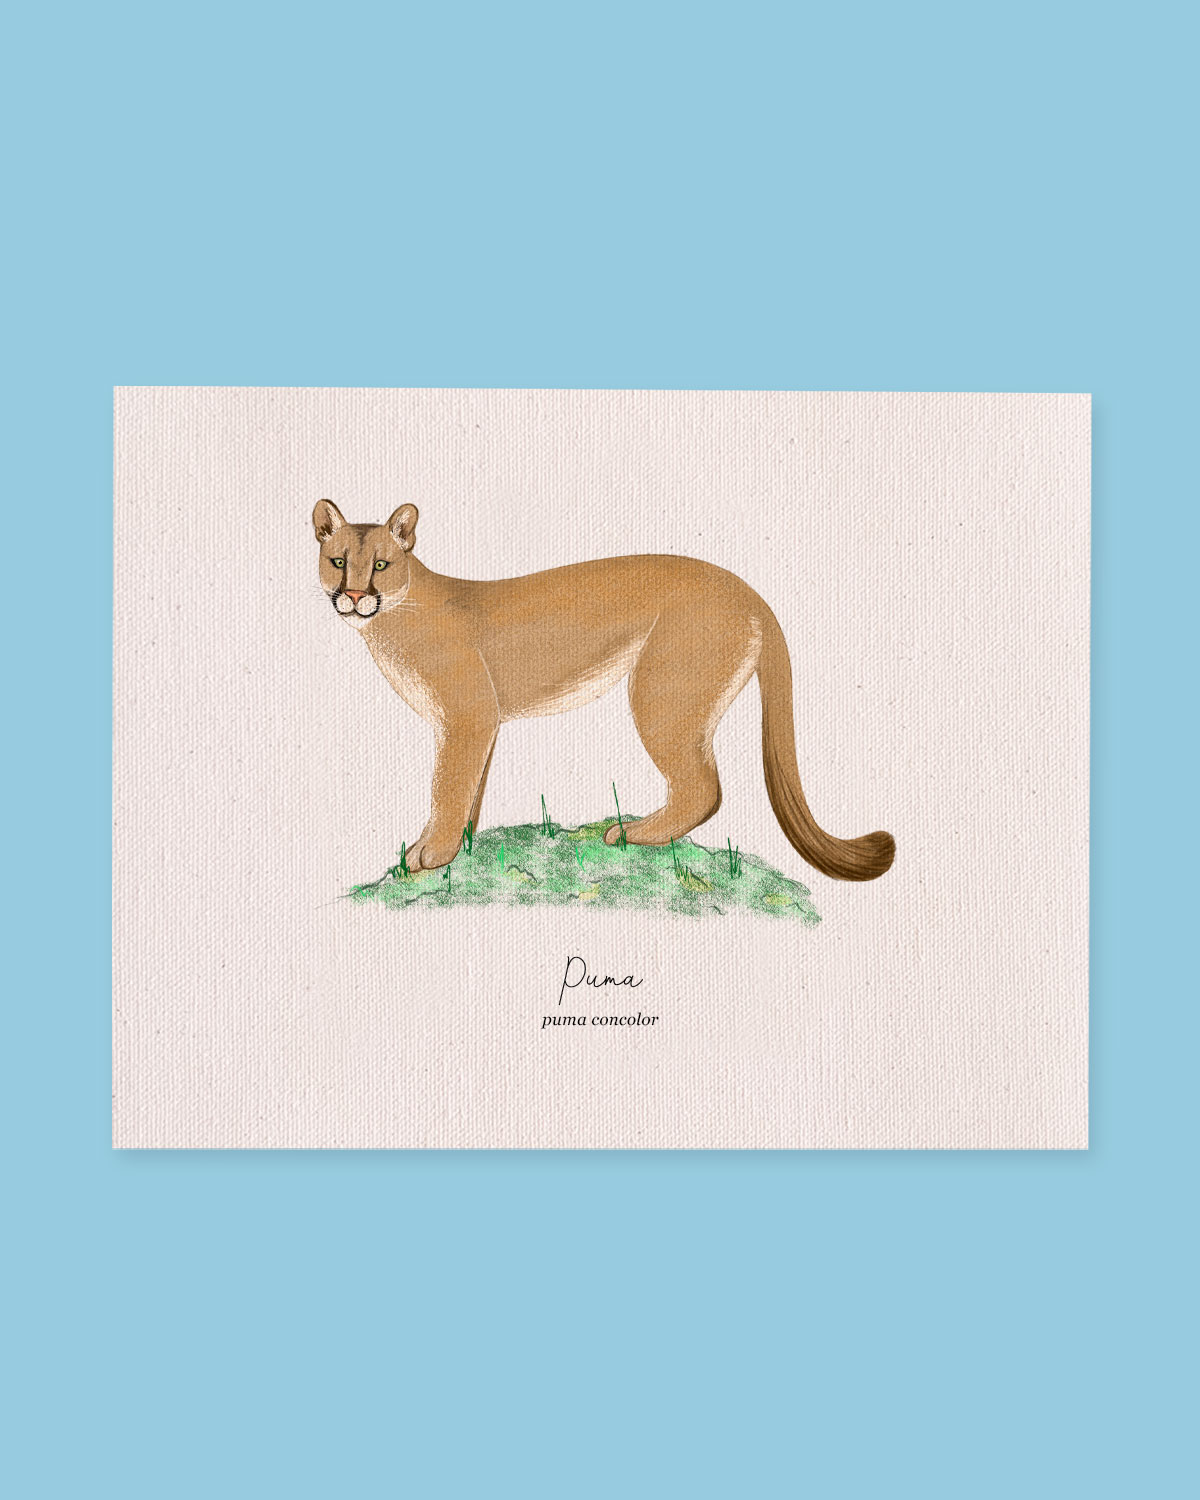 Puma (puma concolor)